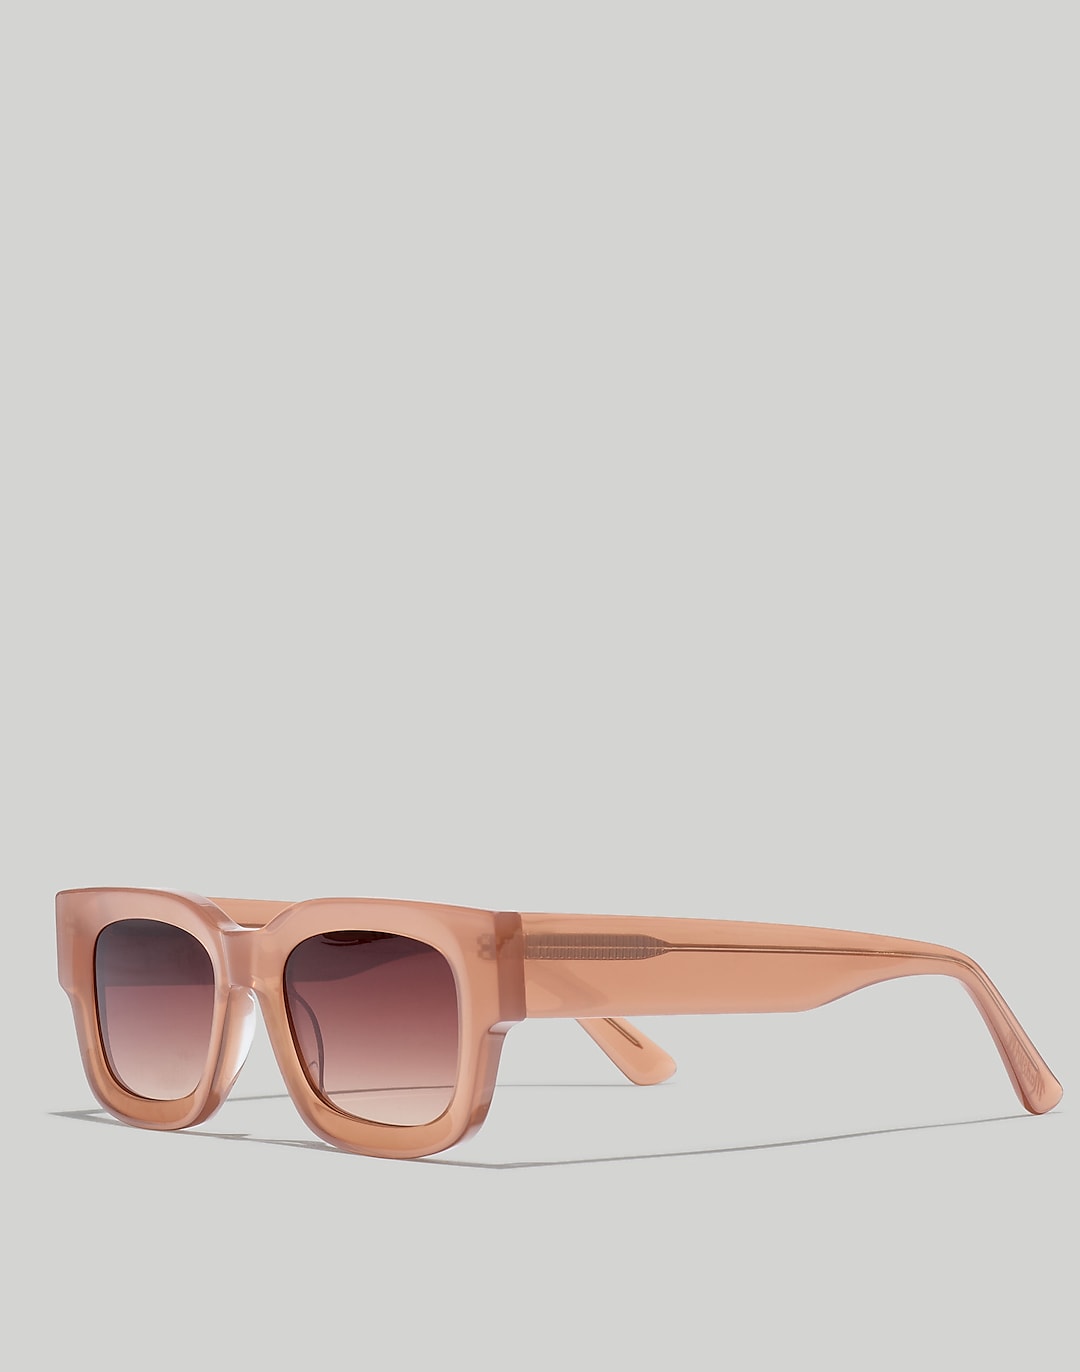 Safton Sunglasses | Madewell